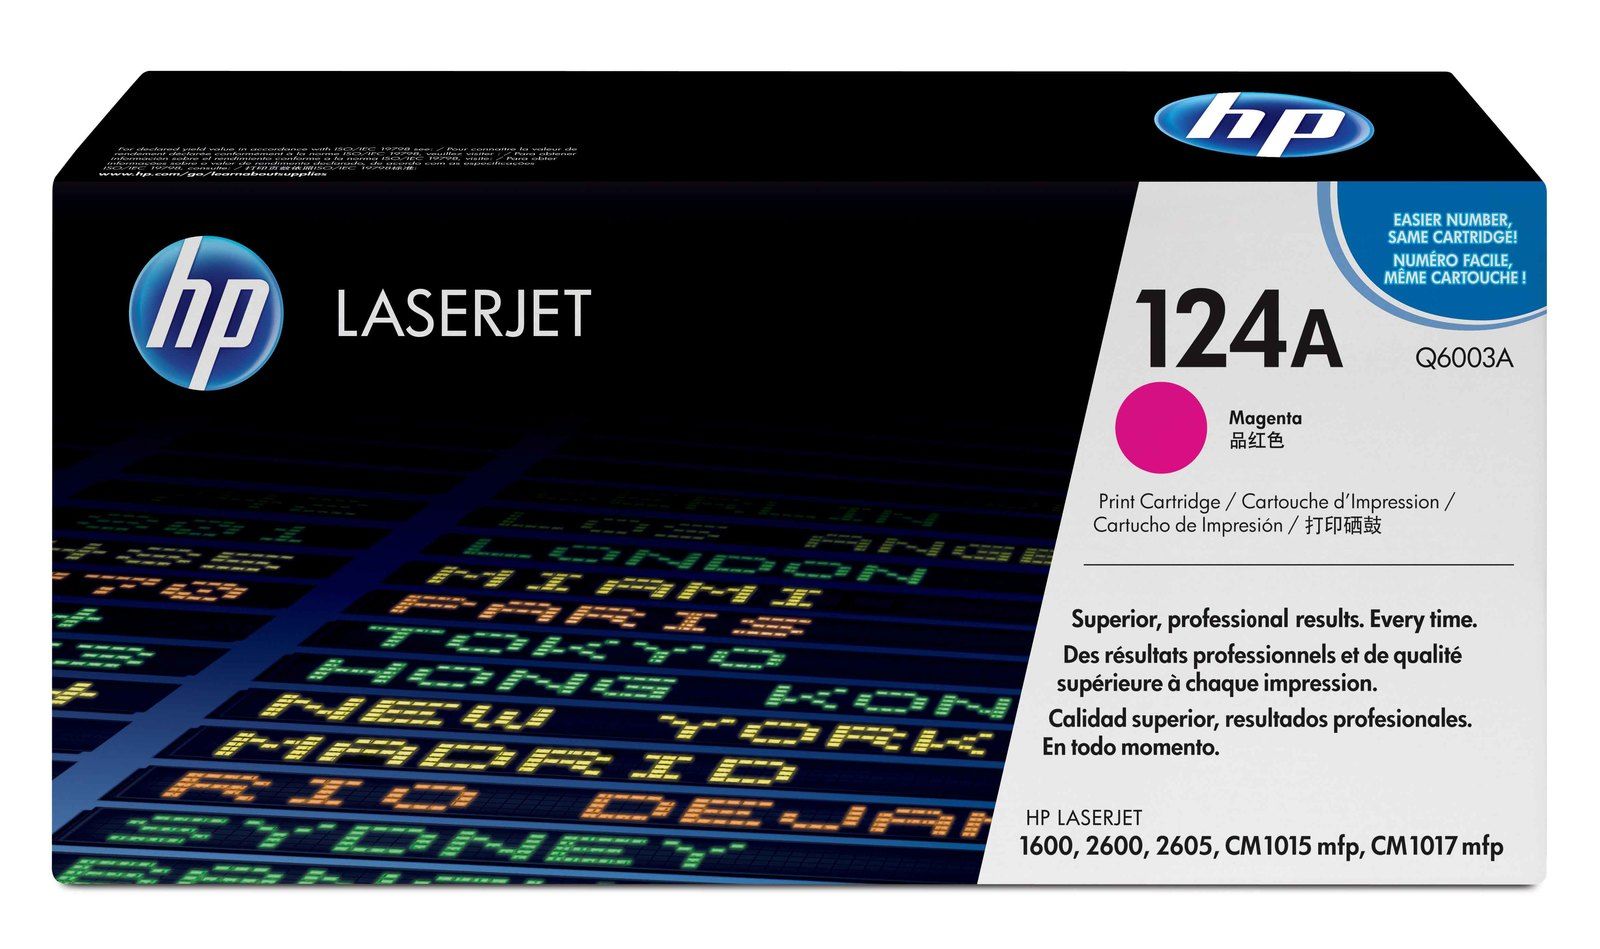 HP LaserJet 4 Q6003A HP Q6003A Magenta Laser Toner Cartridge (124A)